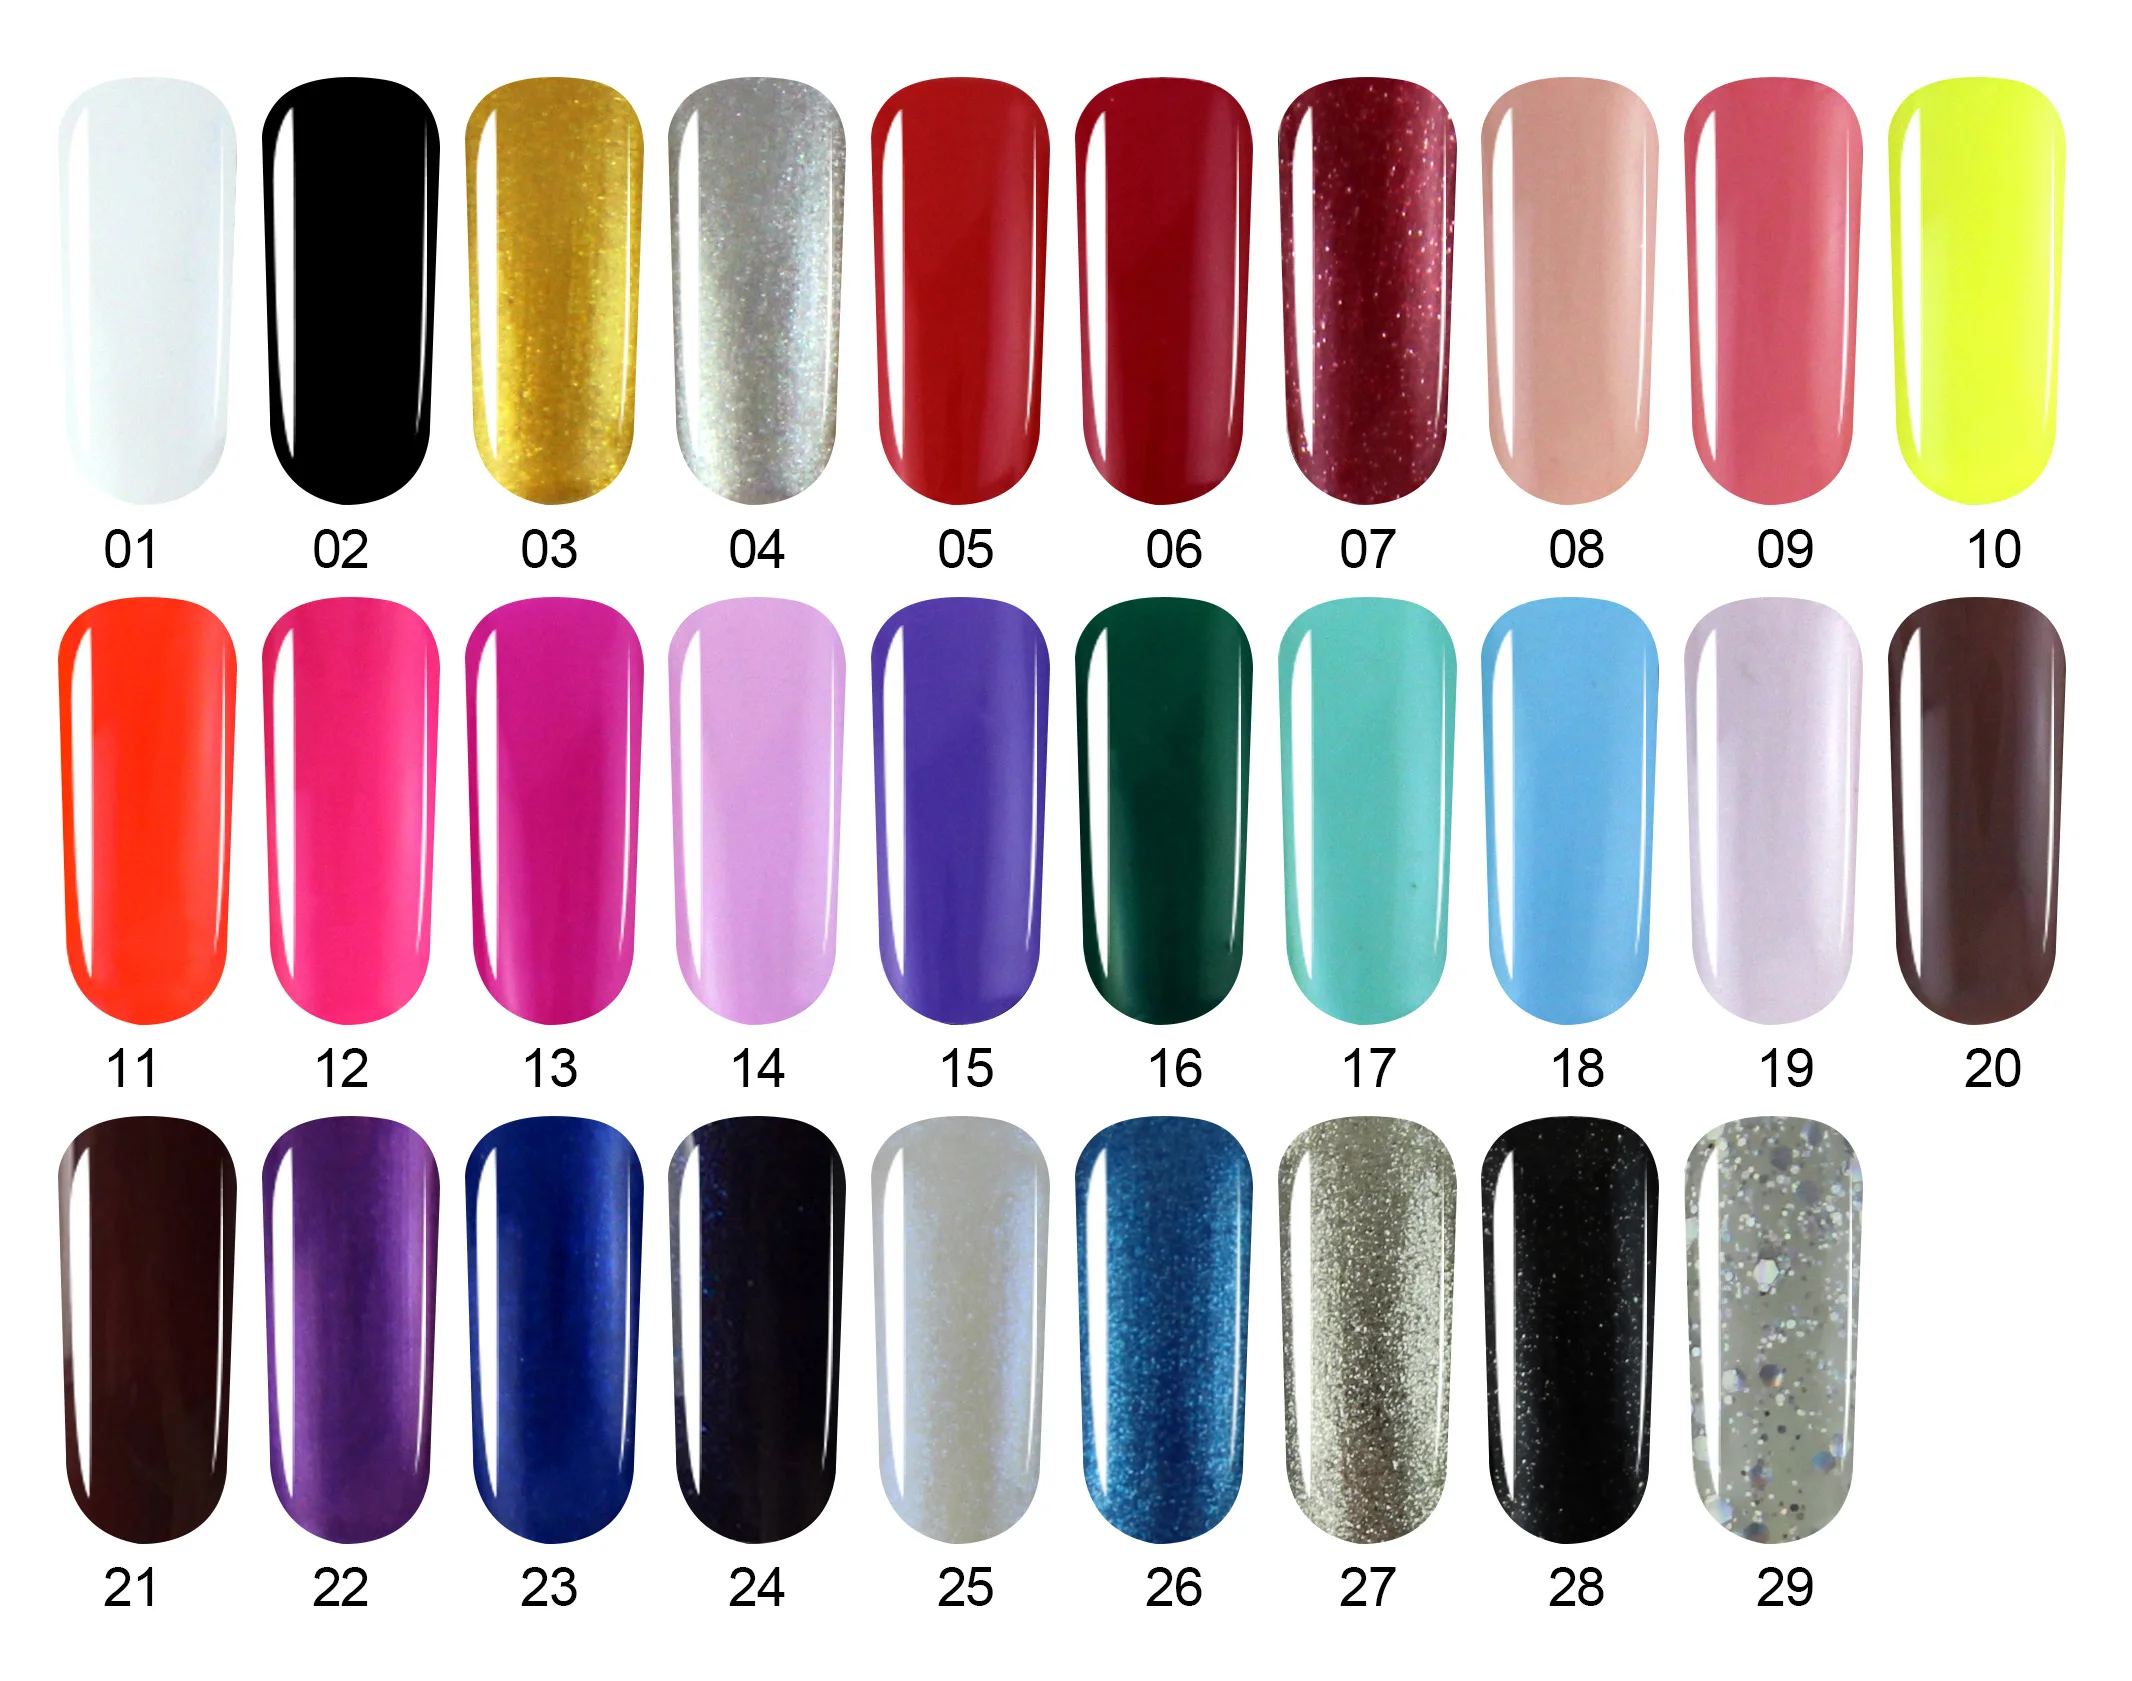 Verntion Lucky Uv набор гель-лаков для ногтей длительное впитывание Светодиодный УФ Гель-лак для ногтей искусство 29 цветов полигель Off White